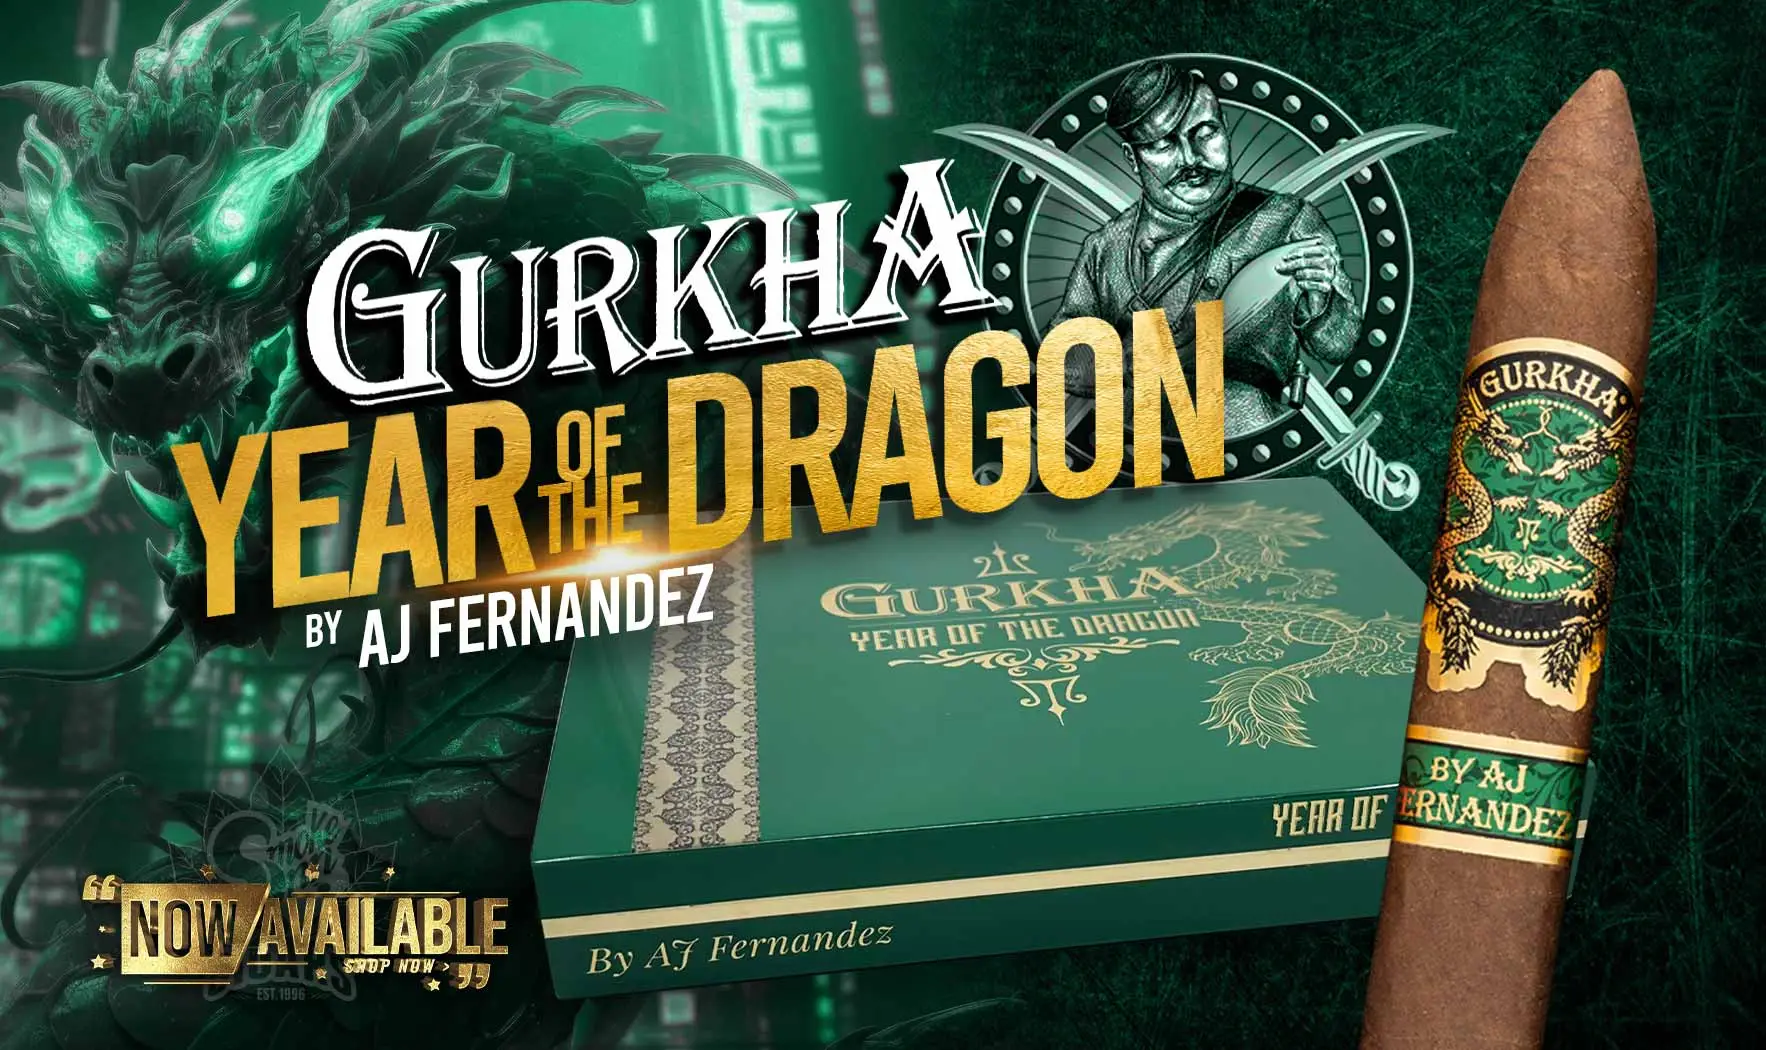 Gurkha Year of the Dragon by AJ